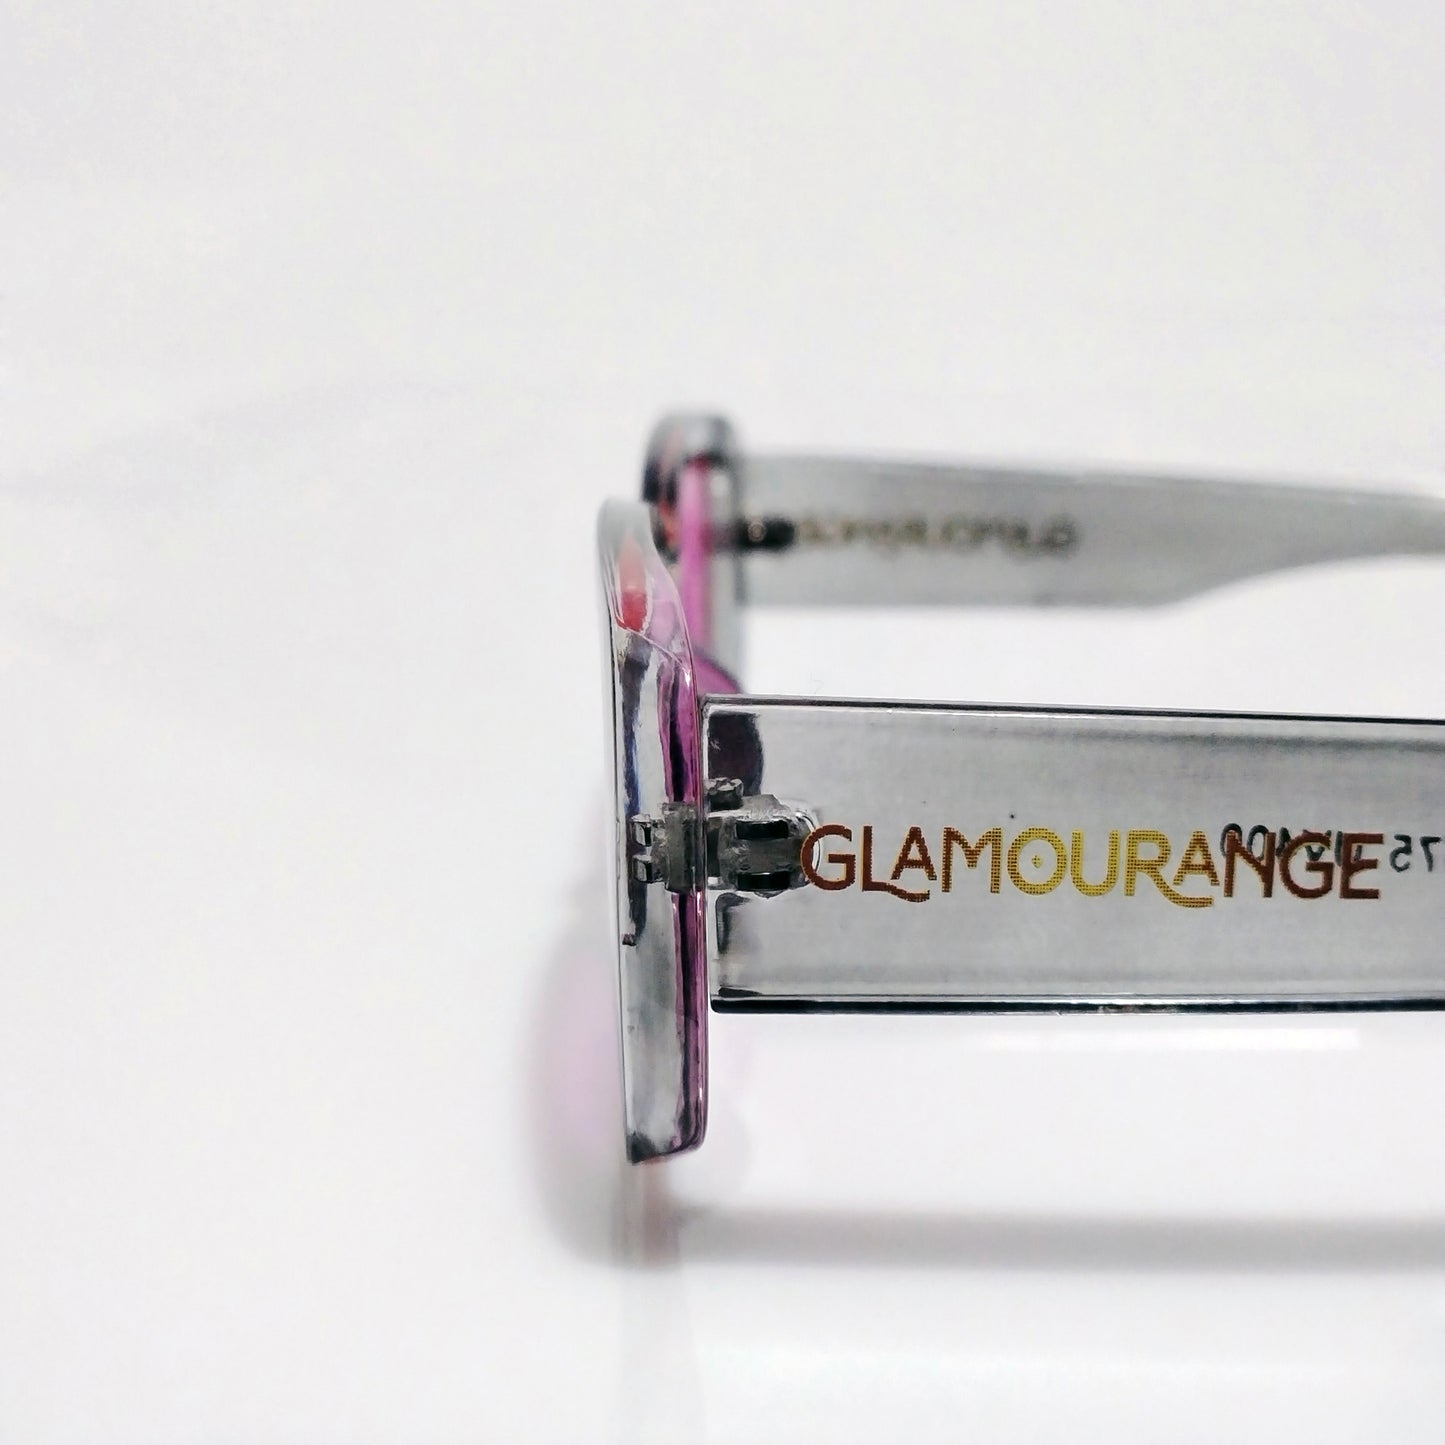 Glamourange Sunglasses Model GR-1002 C2